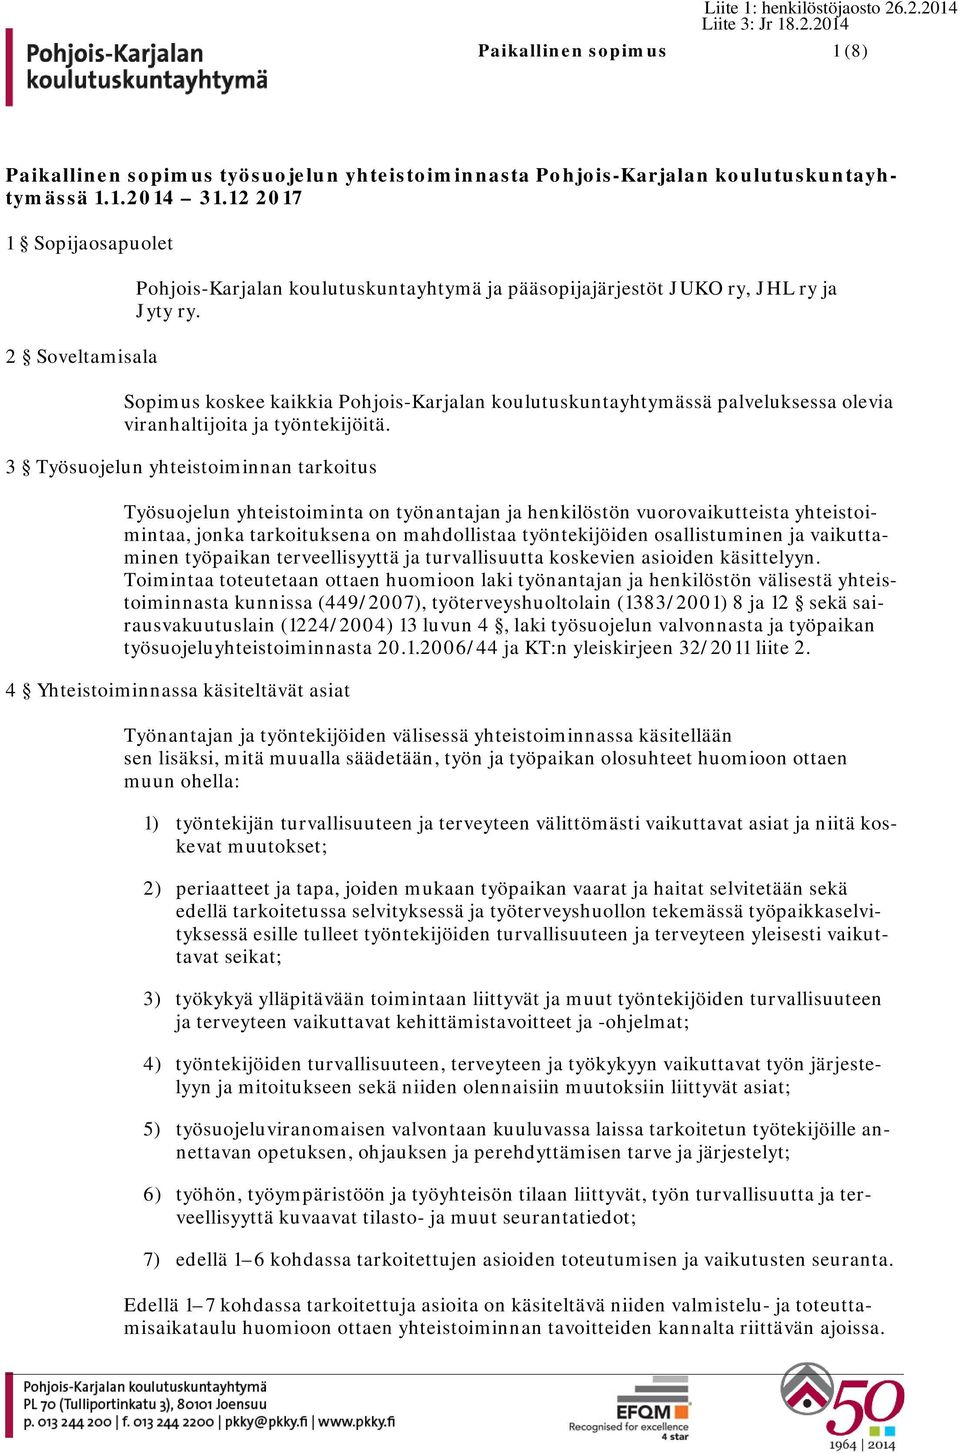 Sopimus koskee kaikkia Pohjois-Karjalan koulutuskuntayhtymässä palveluksessa olevia viranhaltijoita ja työntekijöitä.